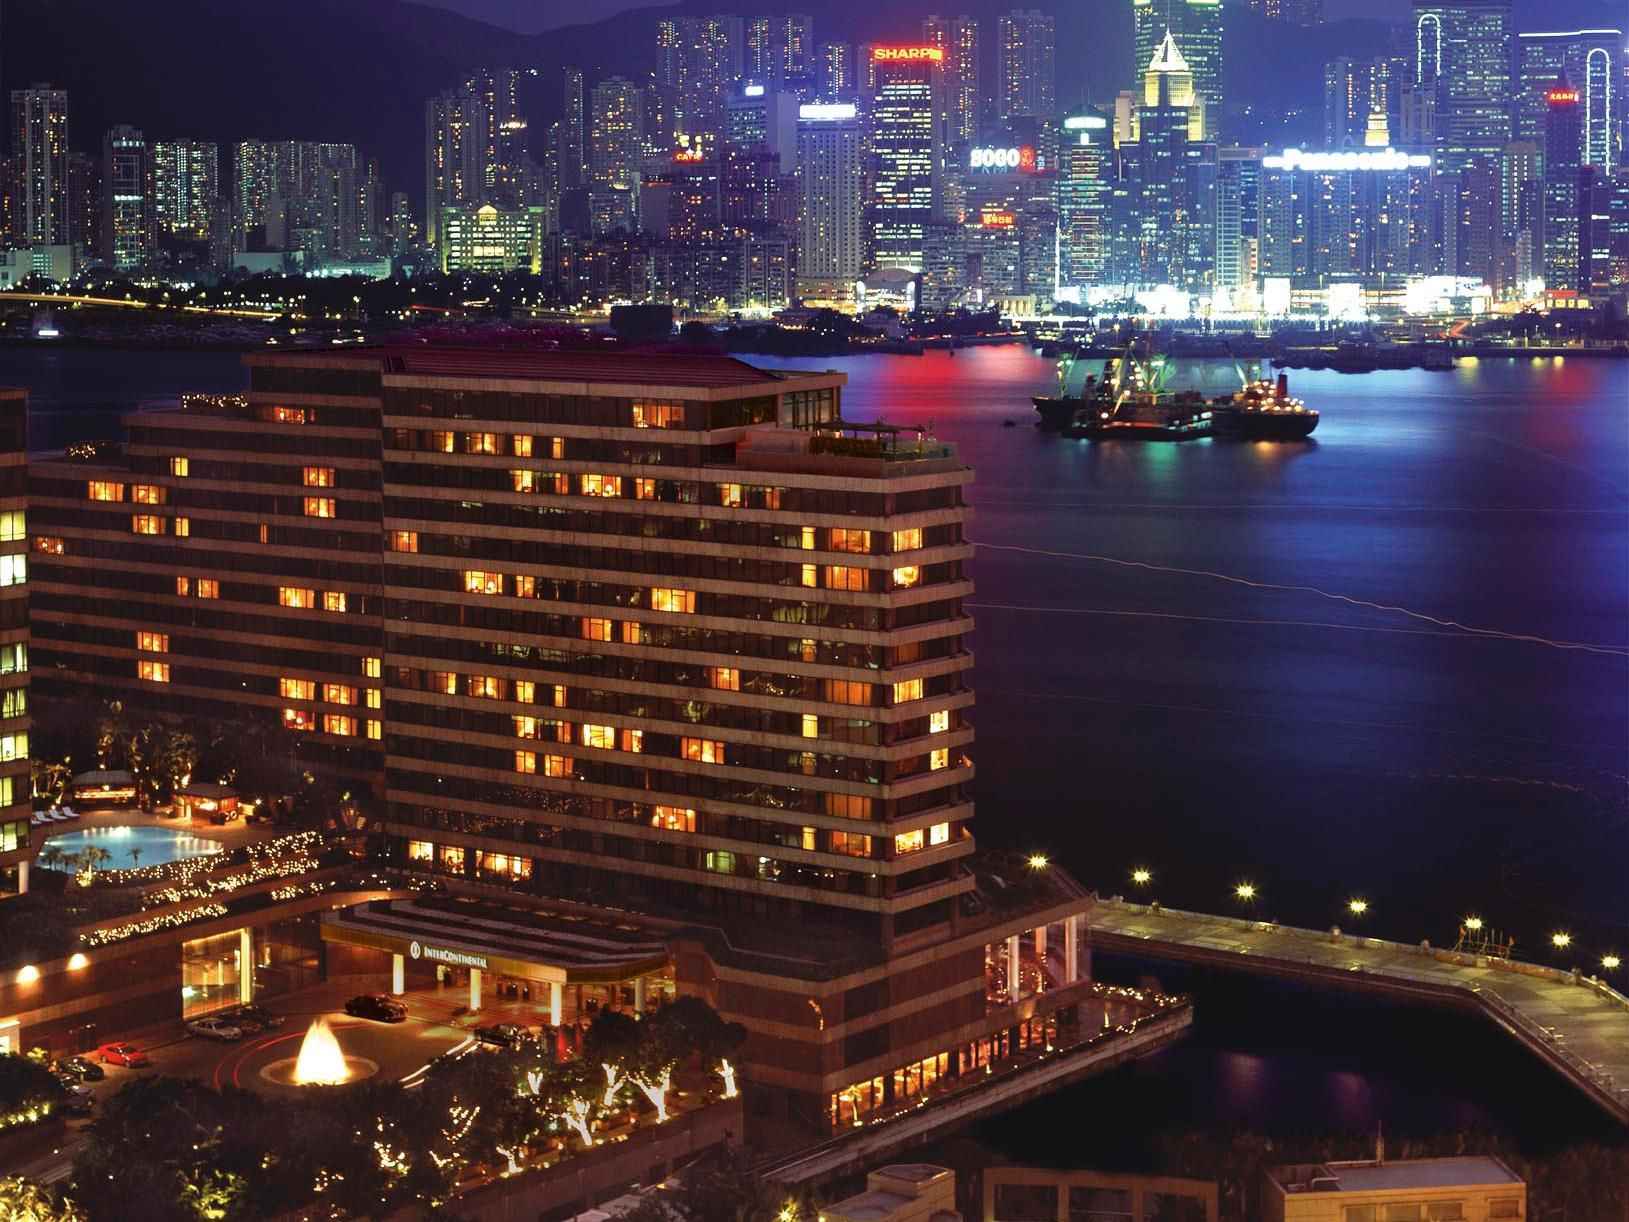 InterContinental Hotel, Hong Kong